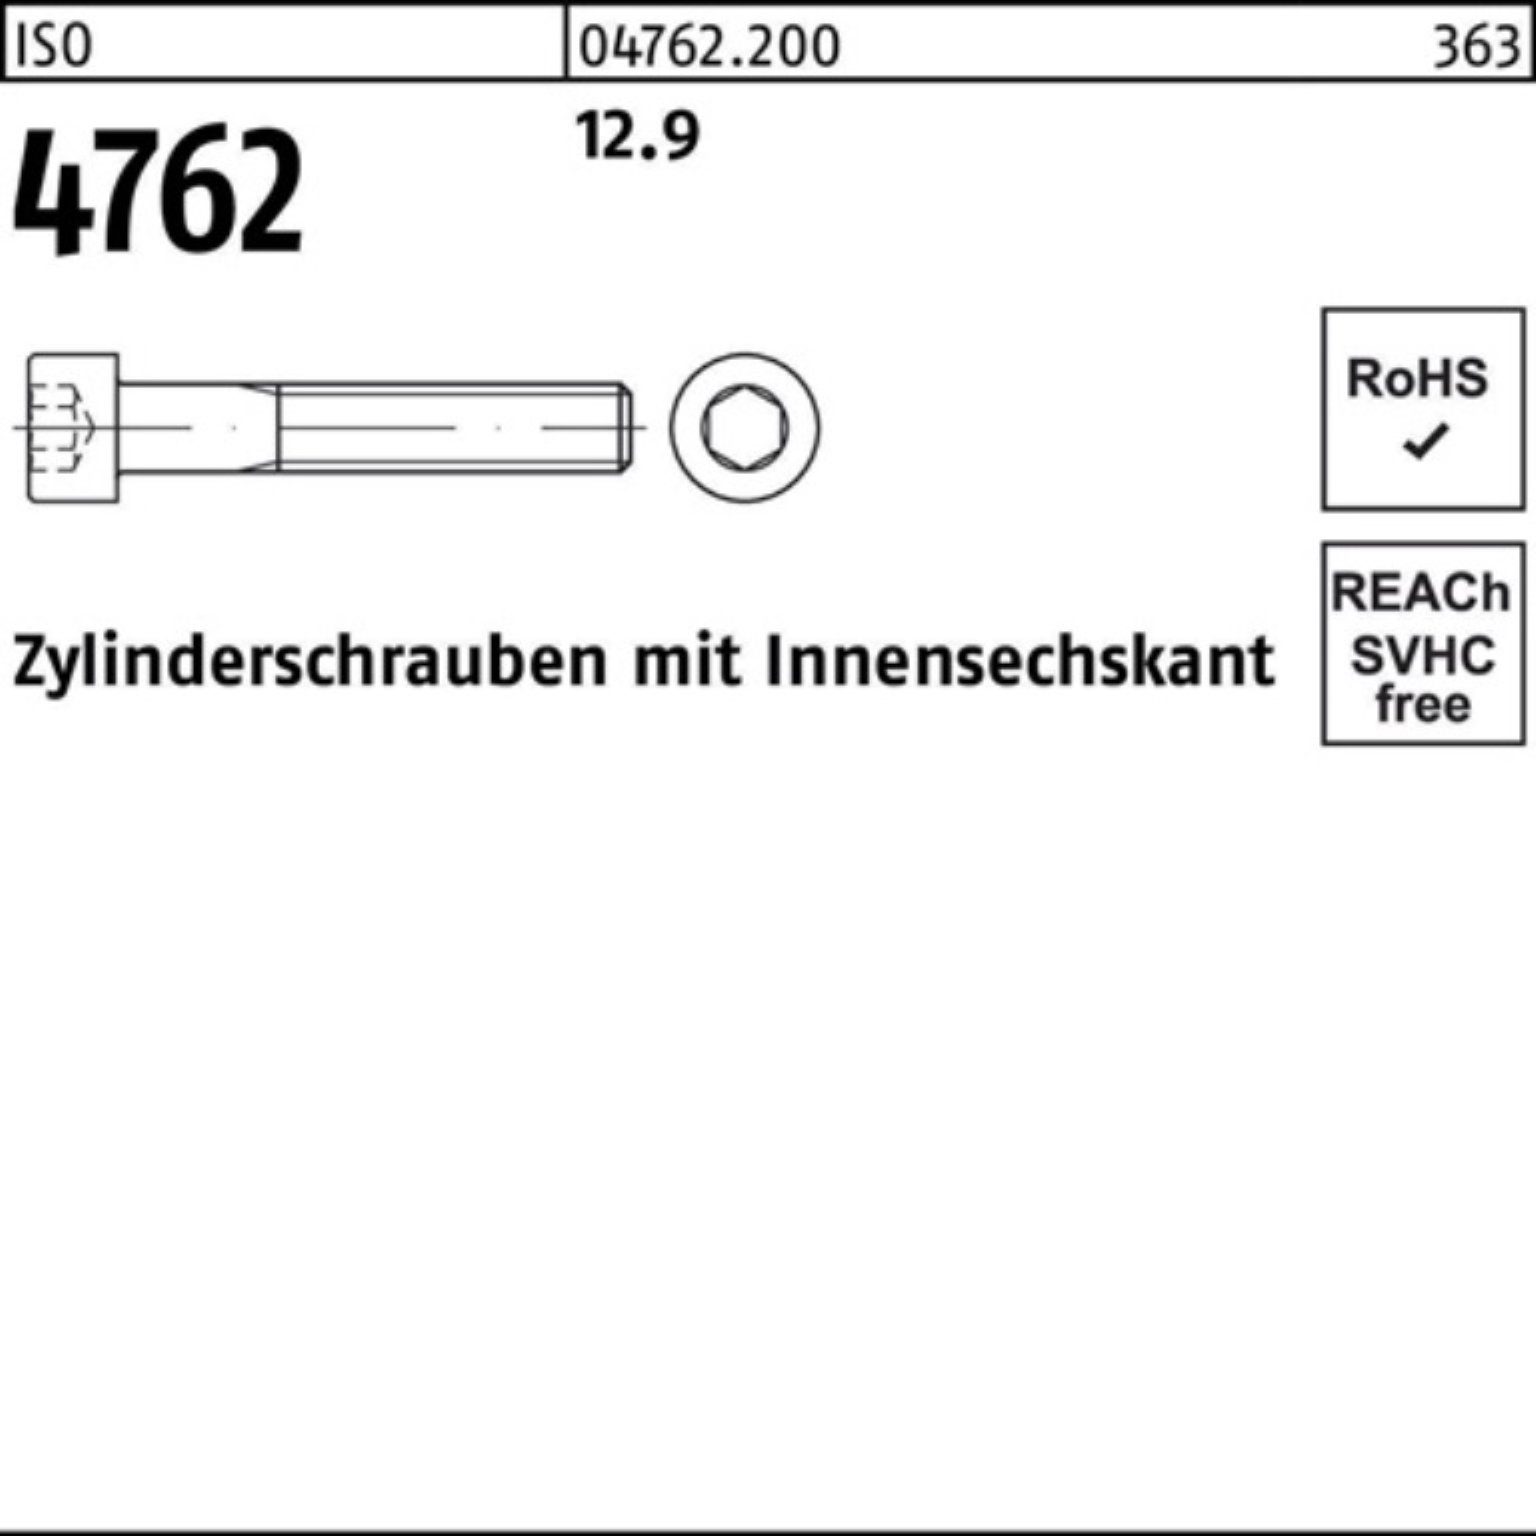 Pack 4762 150 Innen-6kt 12.9 ISO Zylinderschraube Zylinderschraube Reyher 100er Stück M36x 1